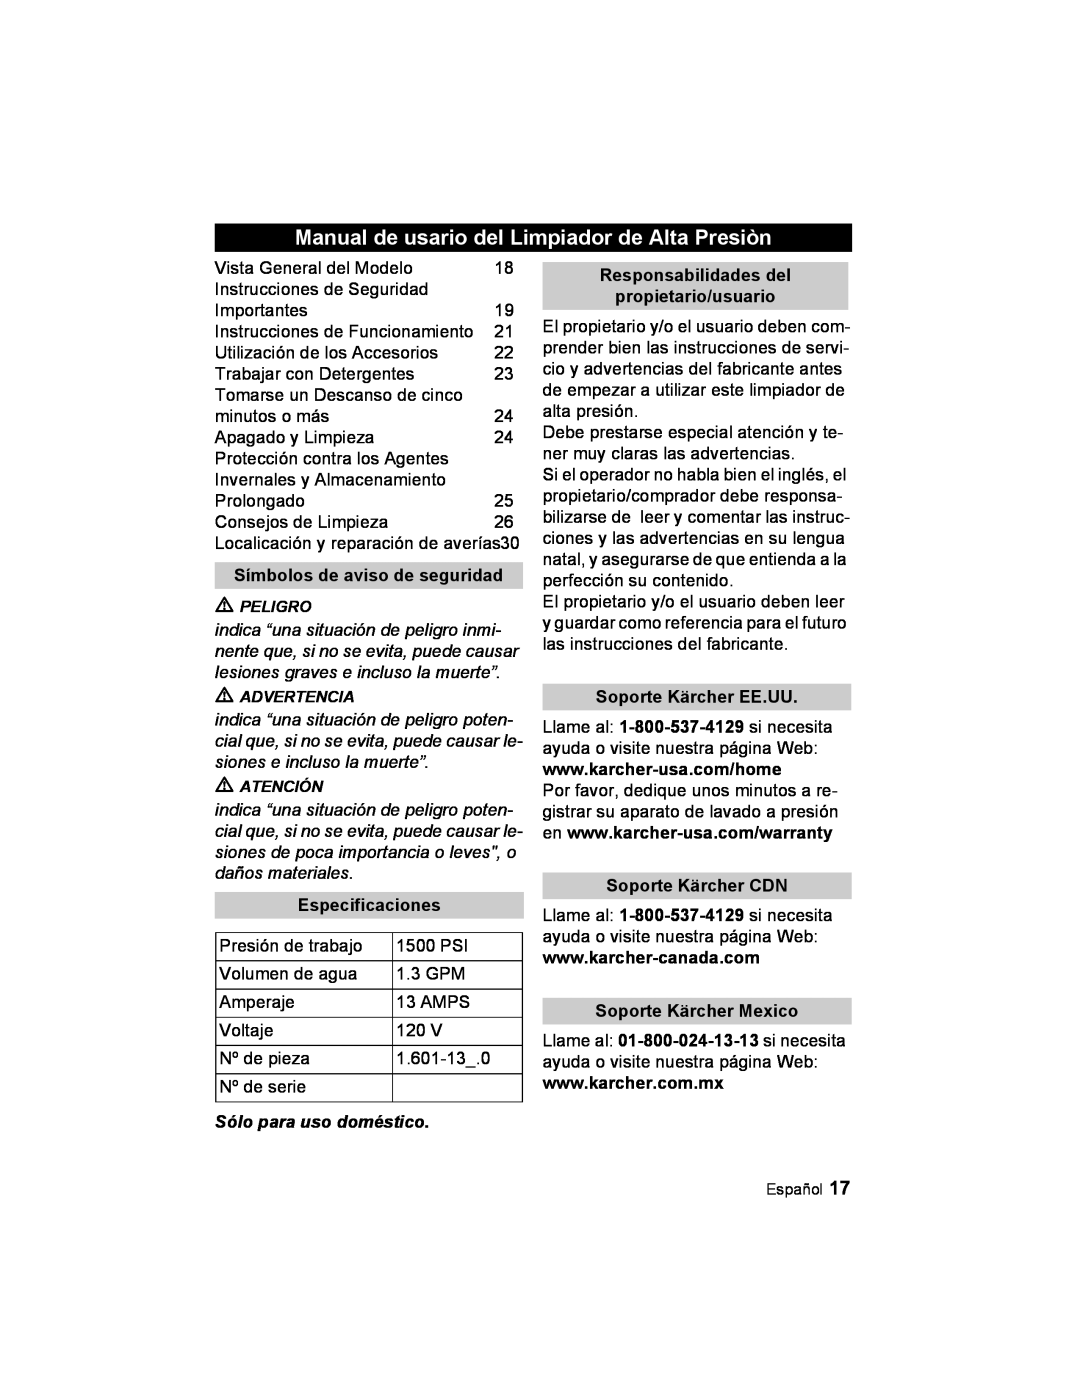 Karcher K 2.21 manual Manual de usario del Limpiador de Alta Presiòn, Símbolos de aviso de seguridad, Especificaciones 